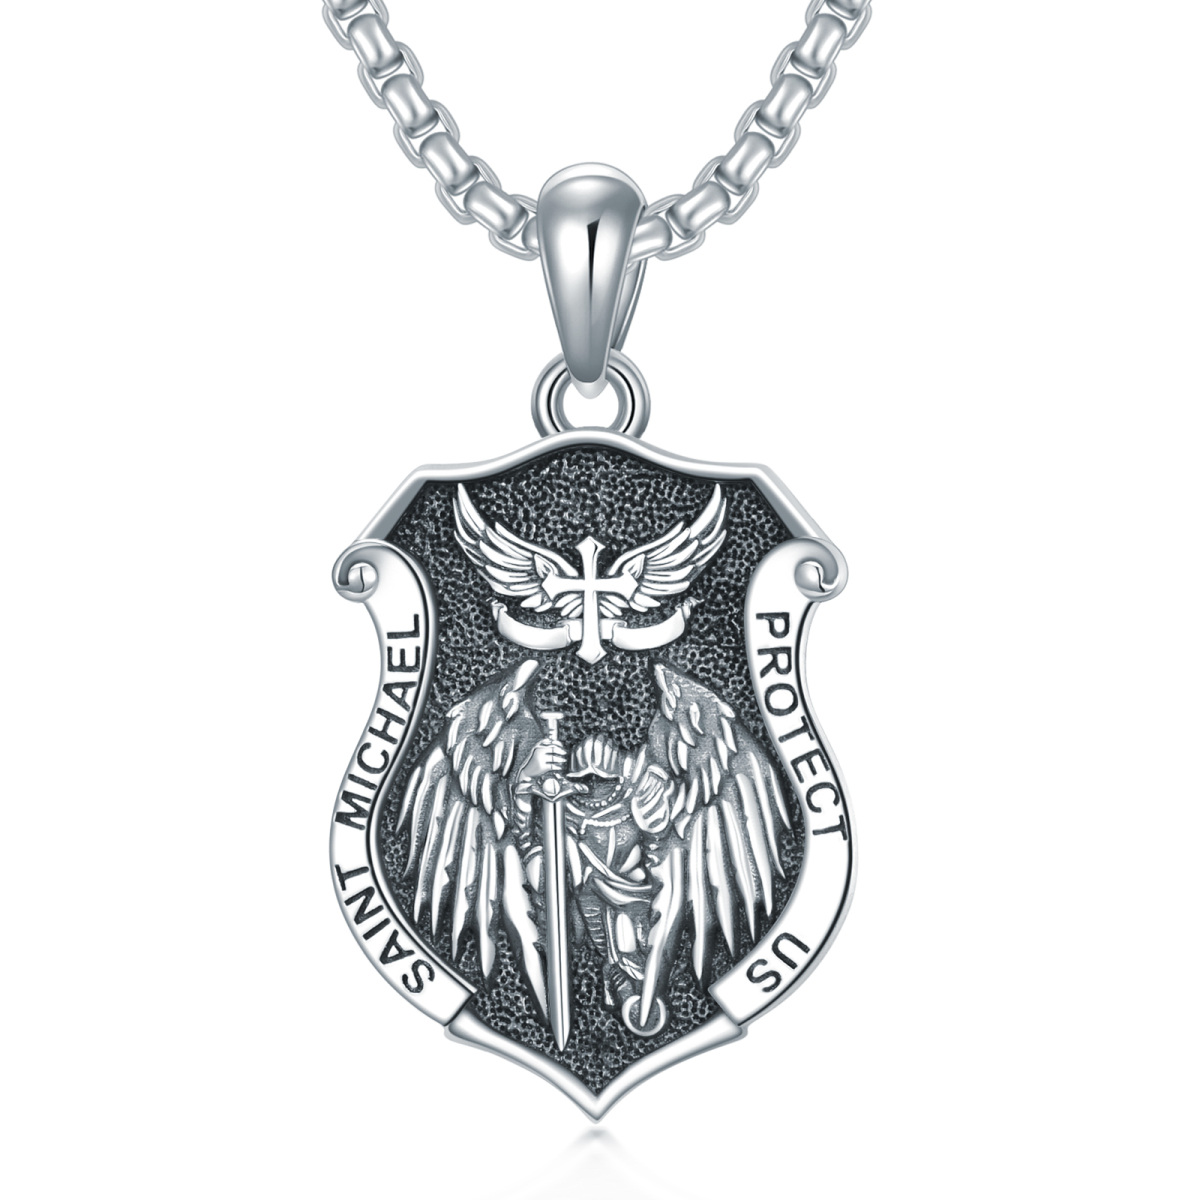 Collier pendentif en argent sterling avec rhodium noir Bouclier Saint Michel avec mot gravé pour homme-1